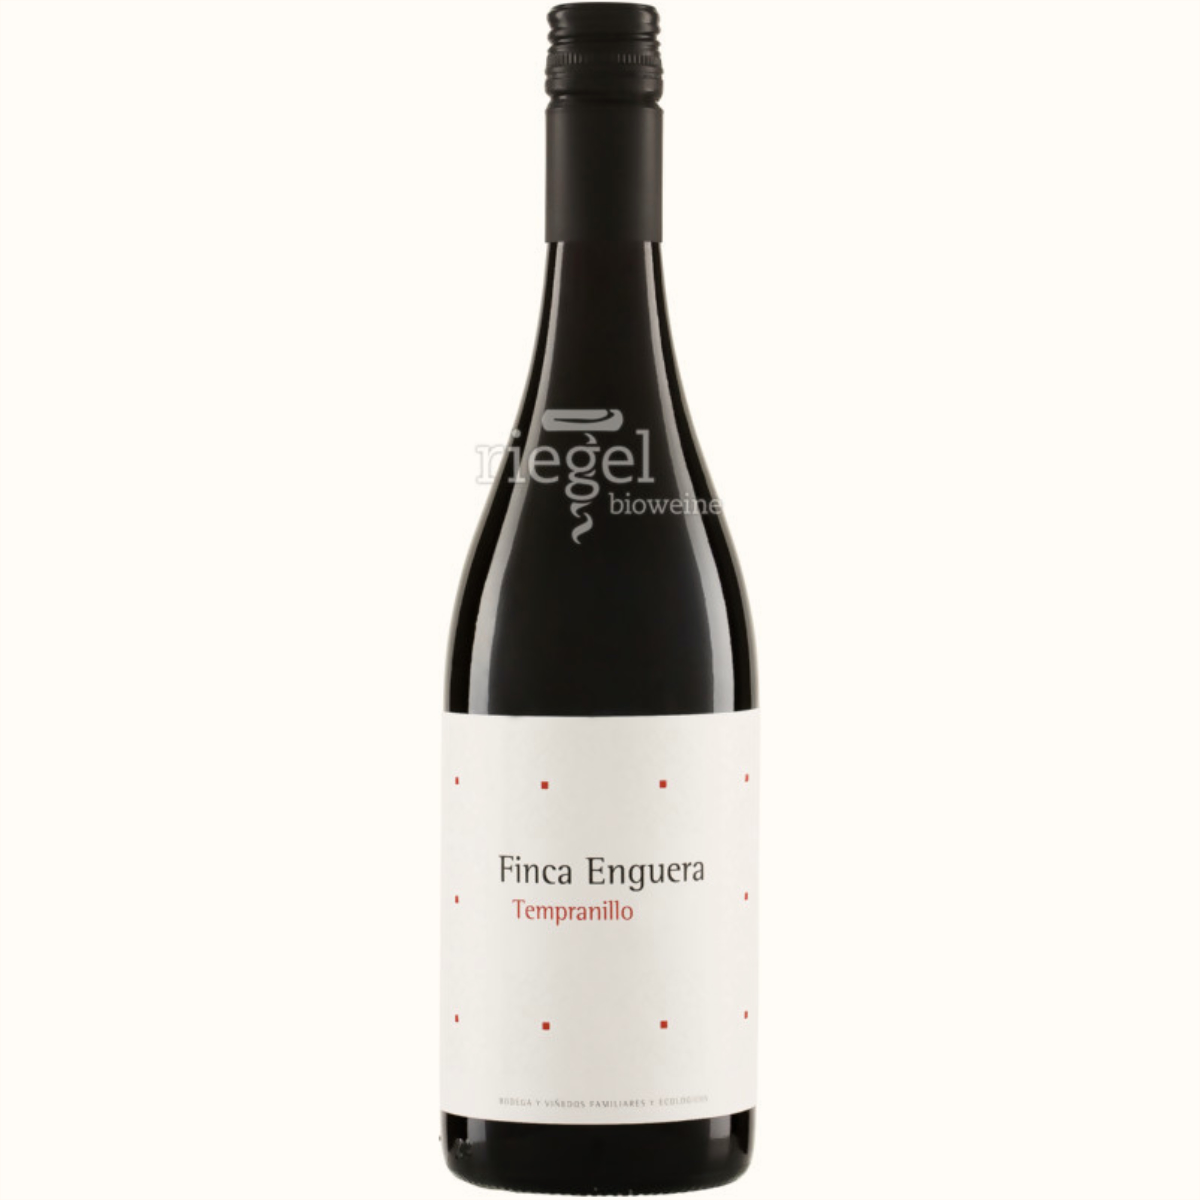 Finca Enguera Tempranillo, Biowein, Riegel Biowein, Wein kaufen